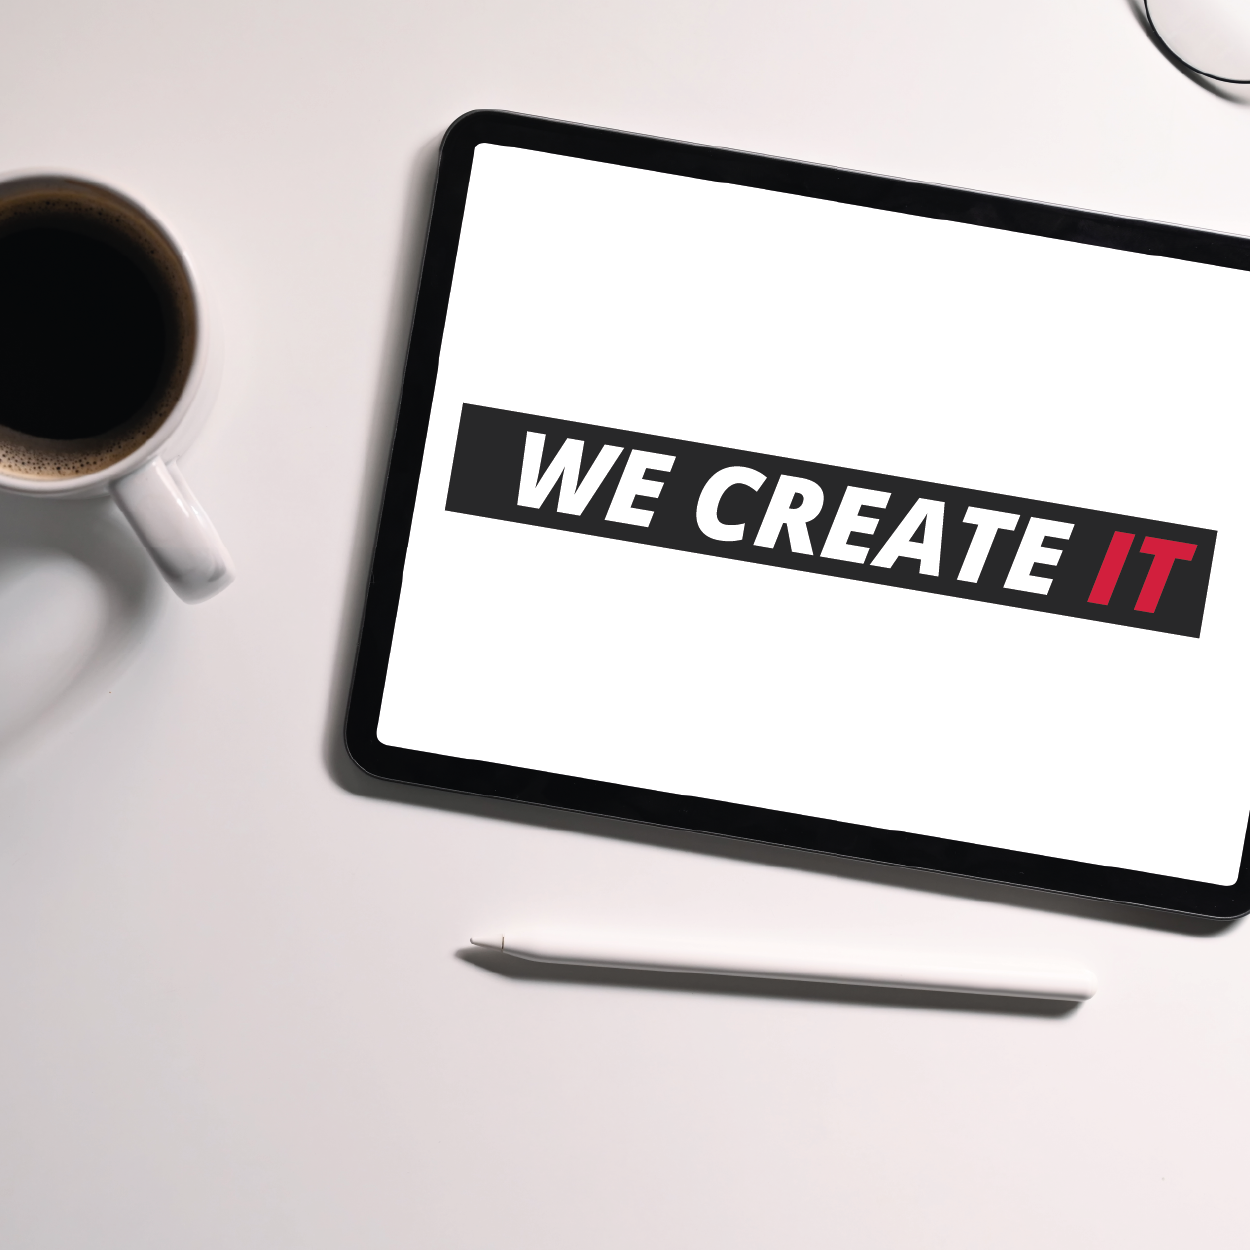 Leistungen - we create IT